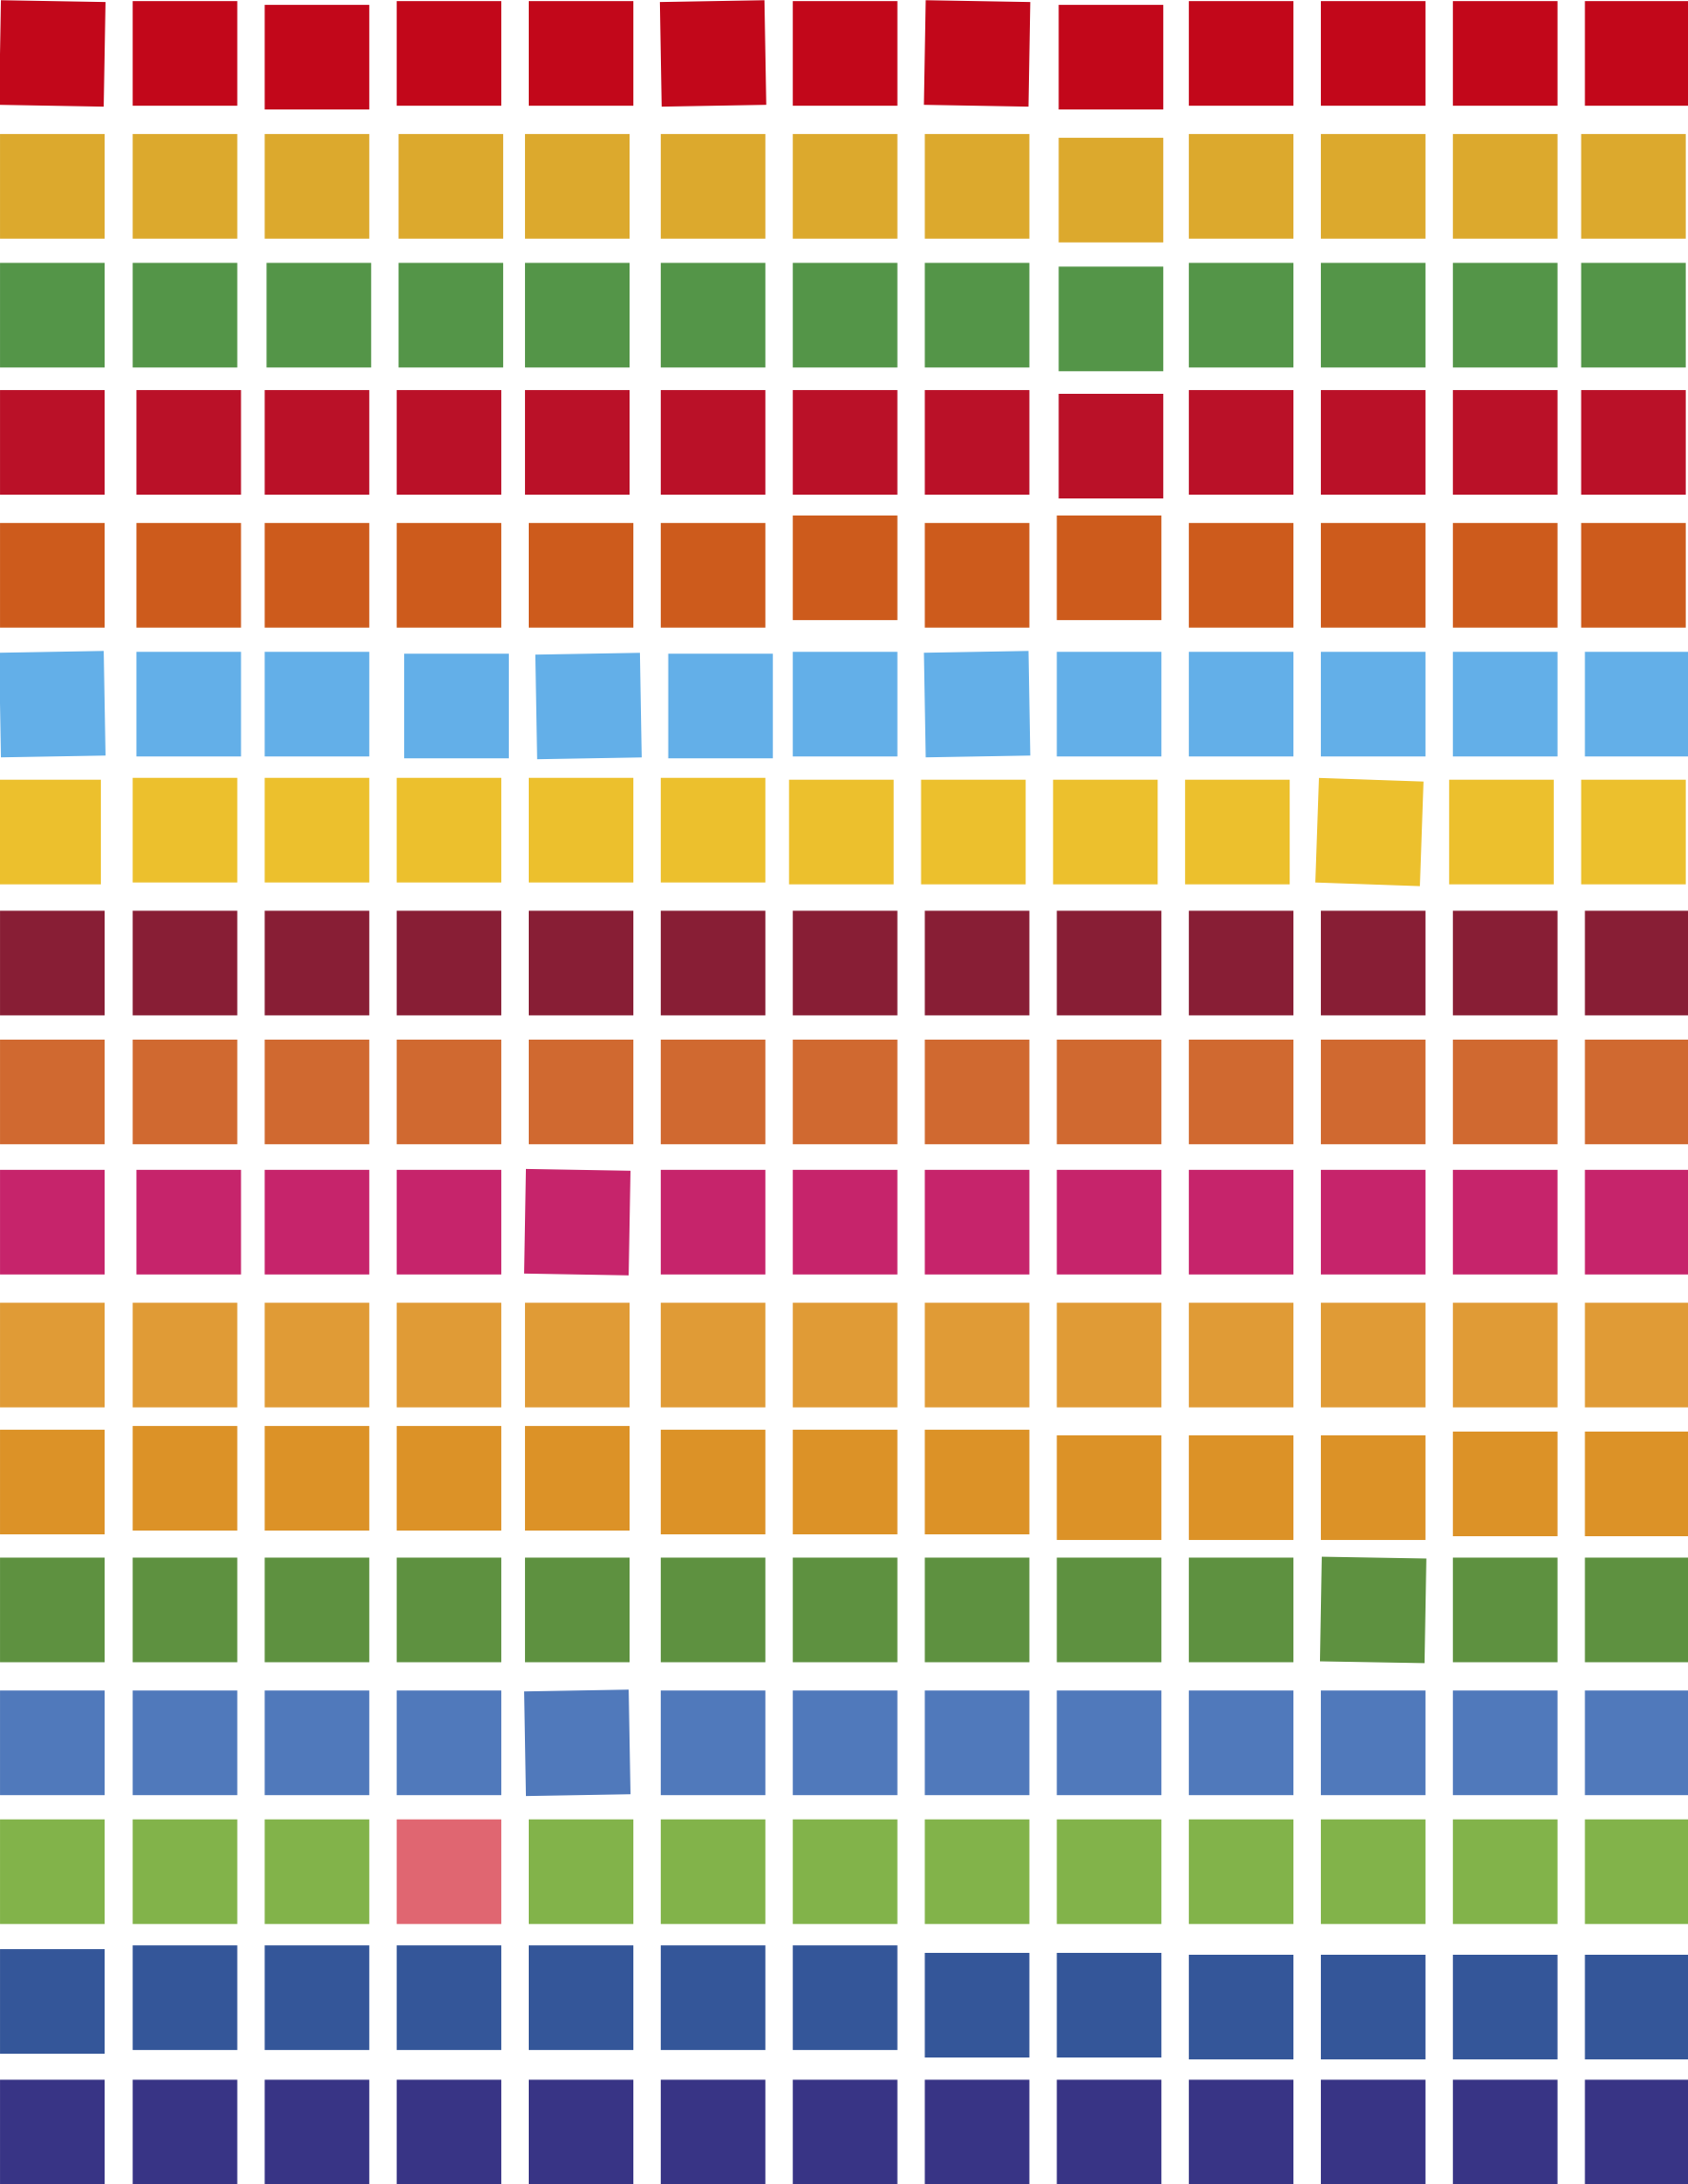 SDG colours